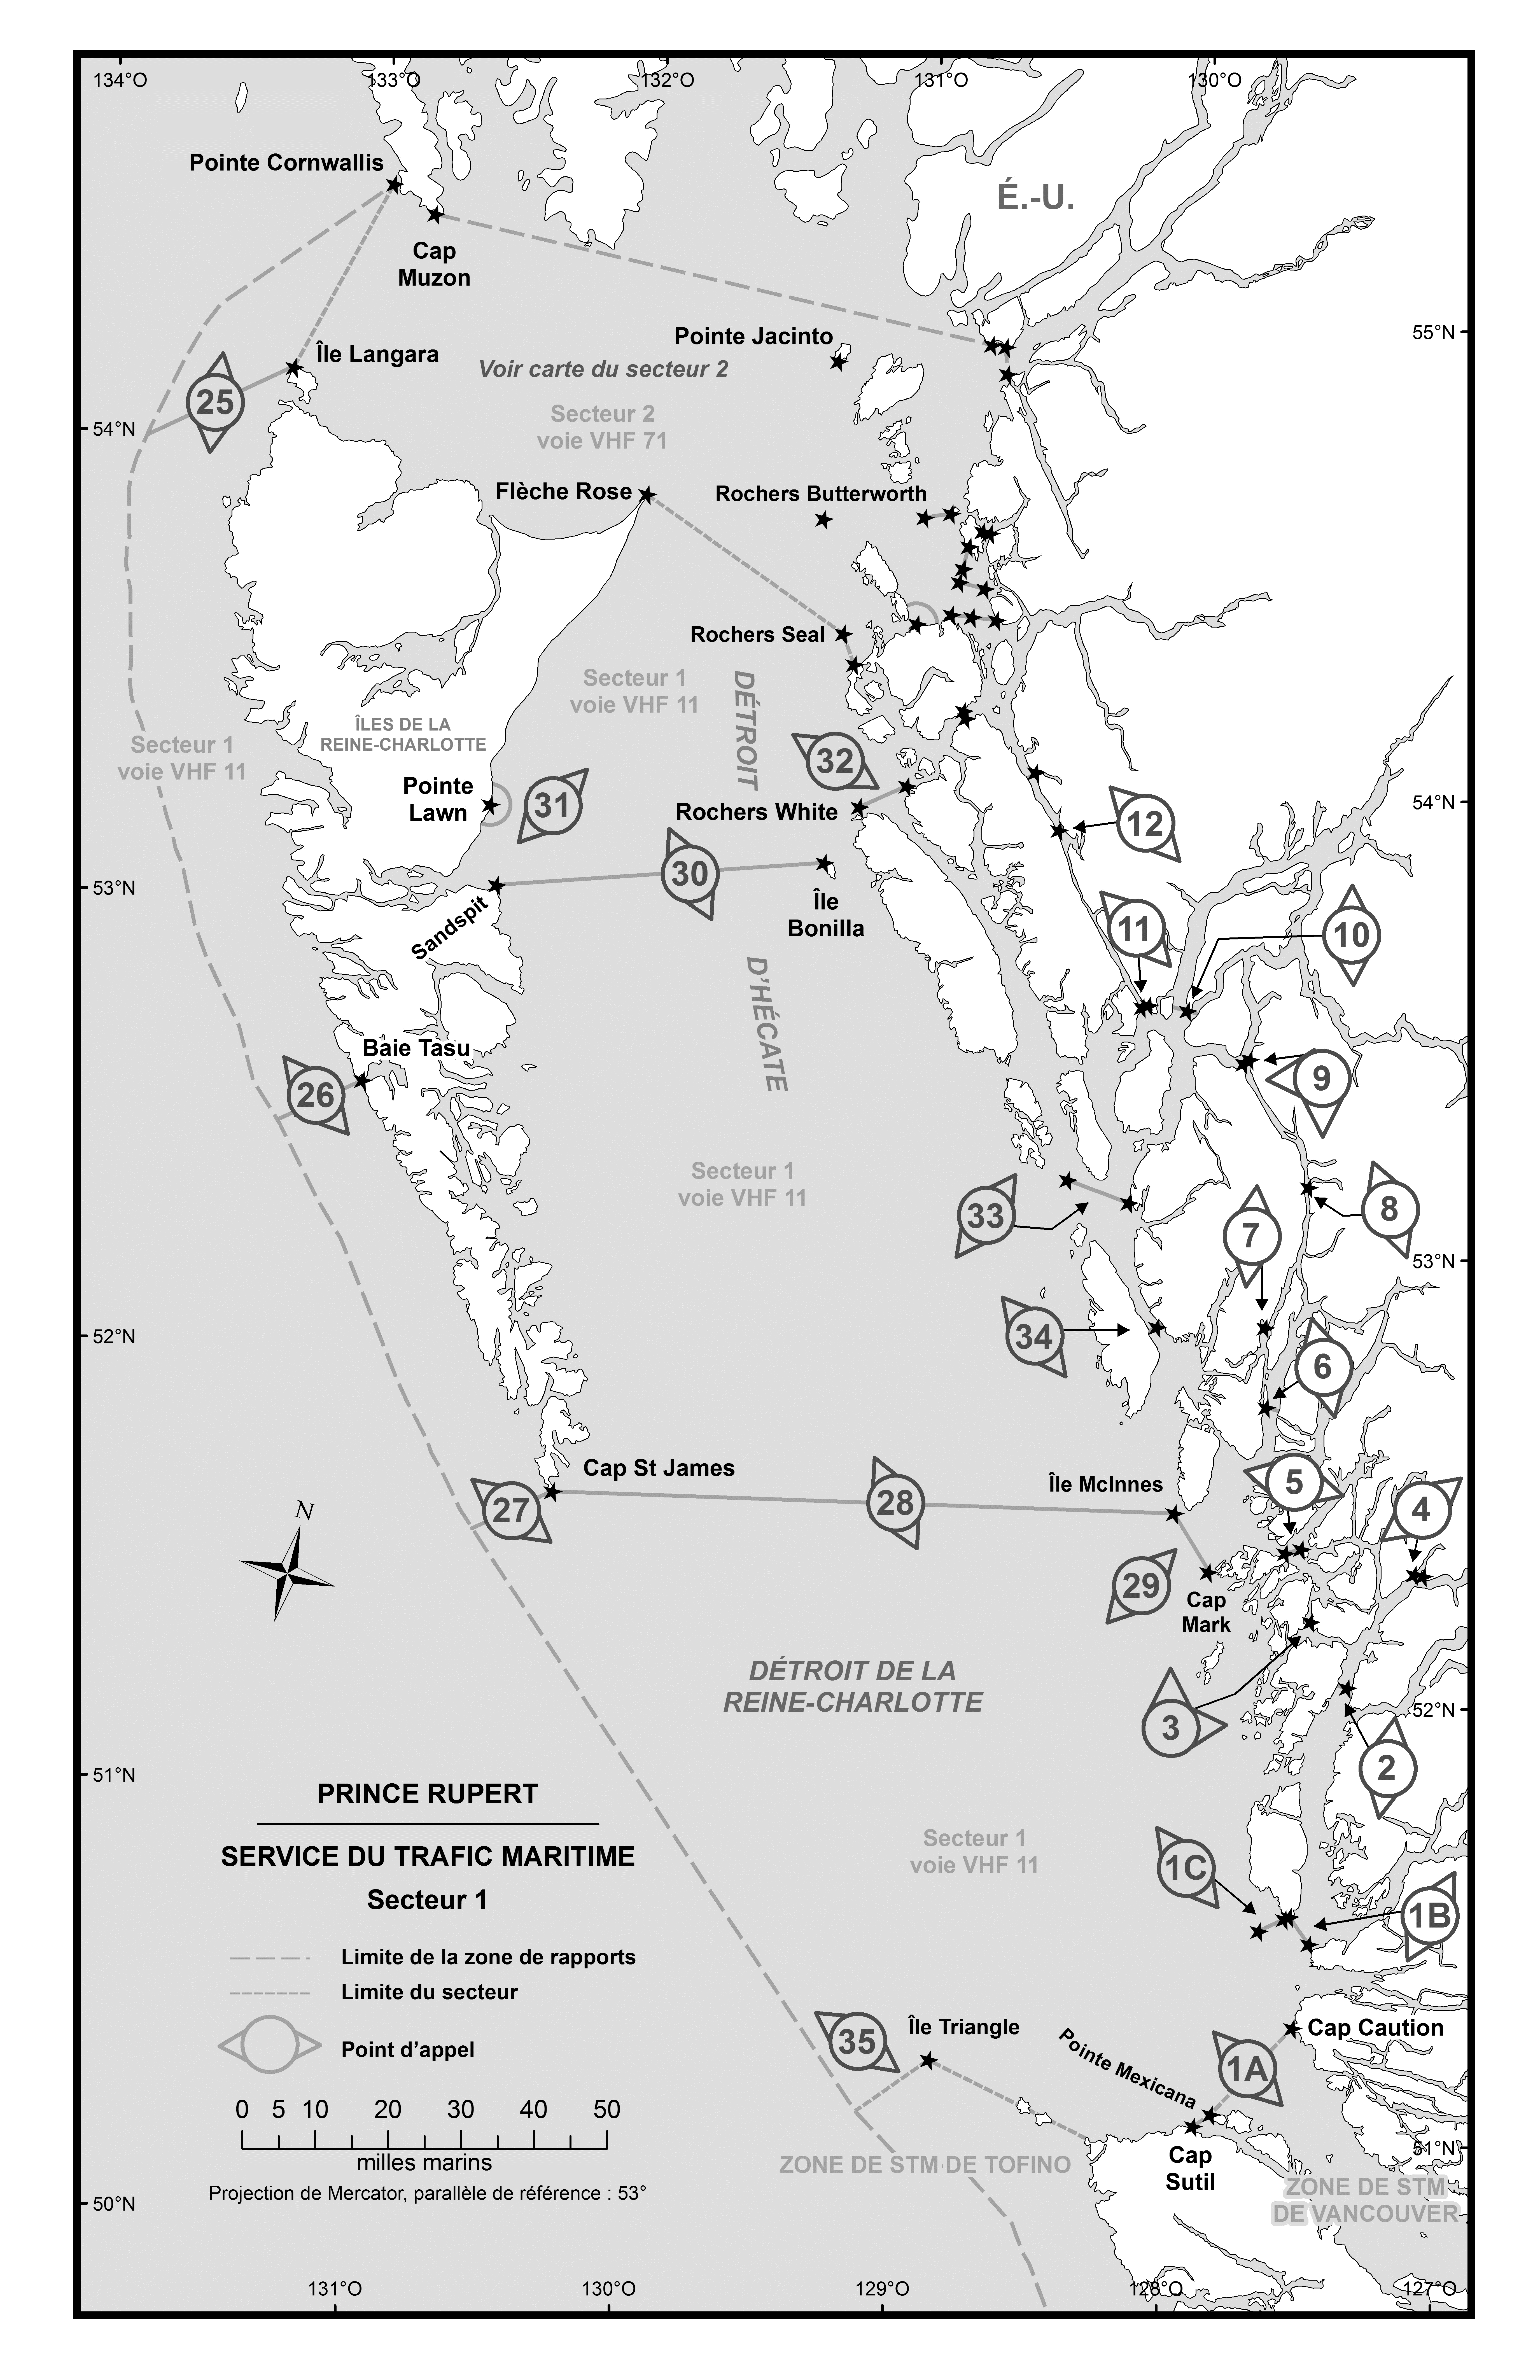 Nouvelle carte de Prince Ruppert Services du trafic maritime Secteur 1